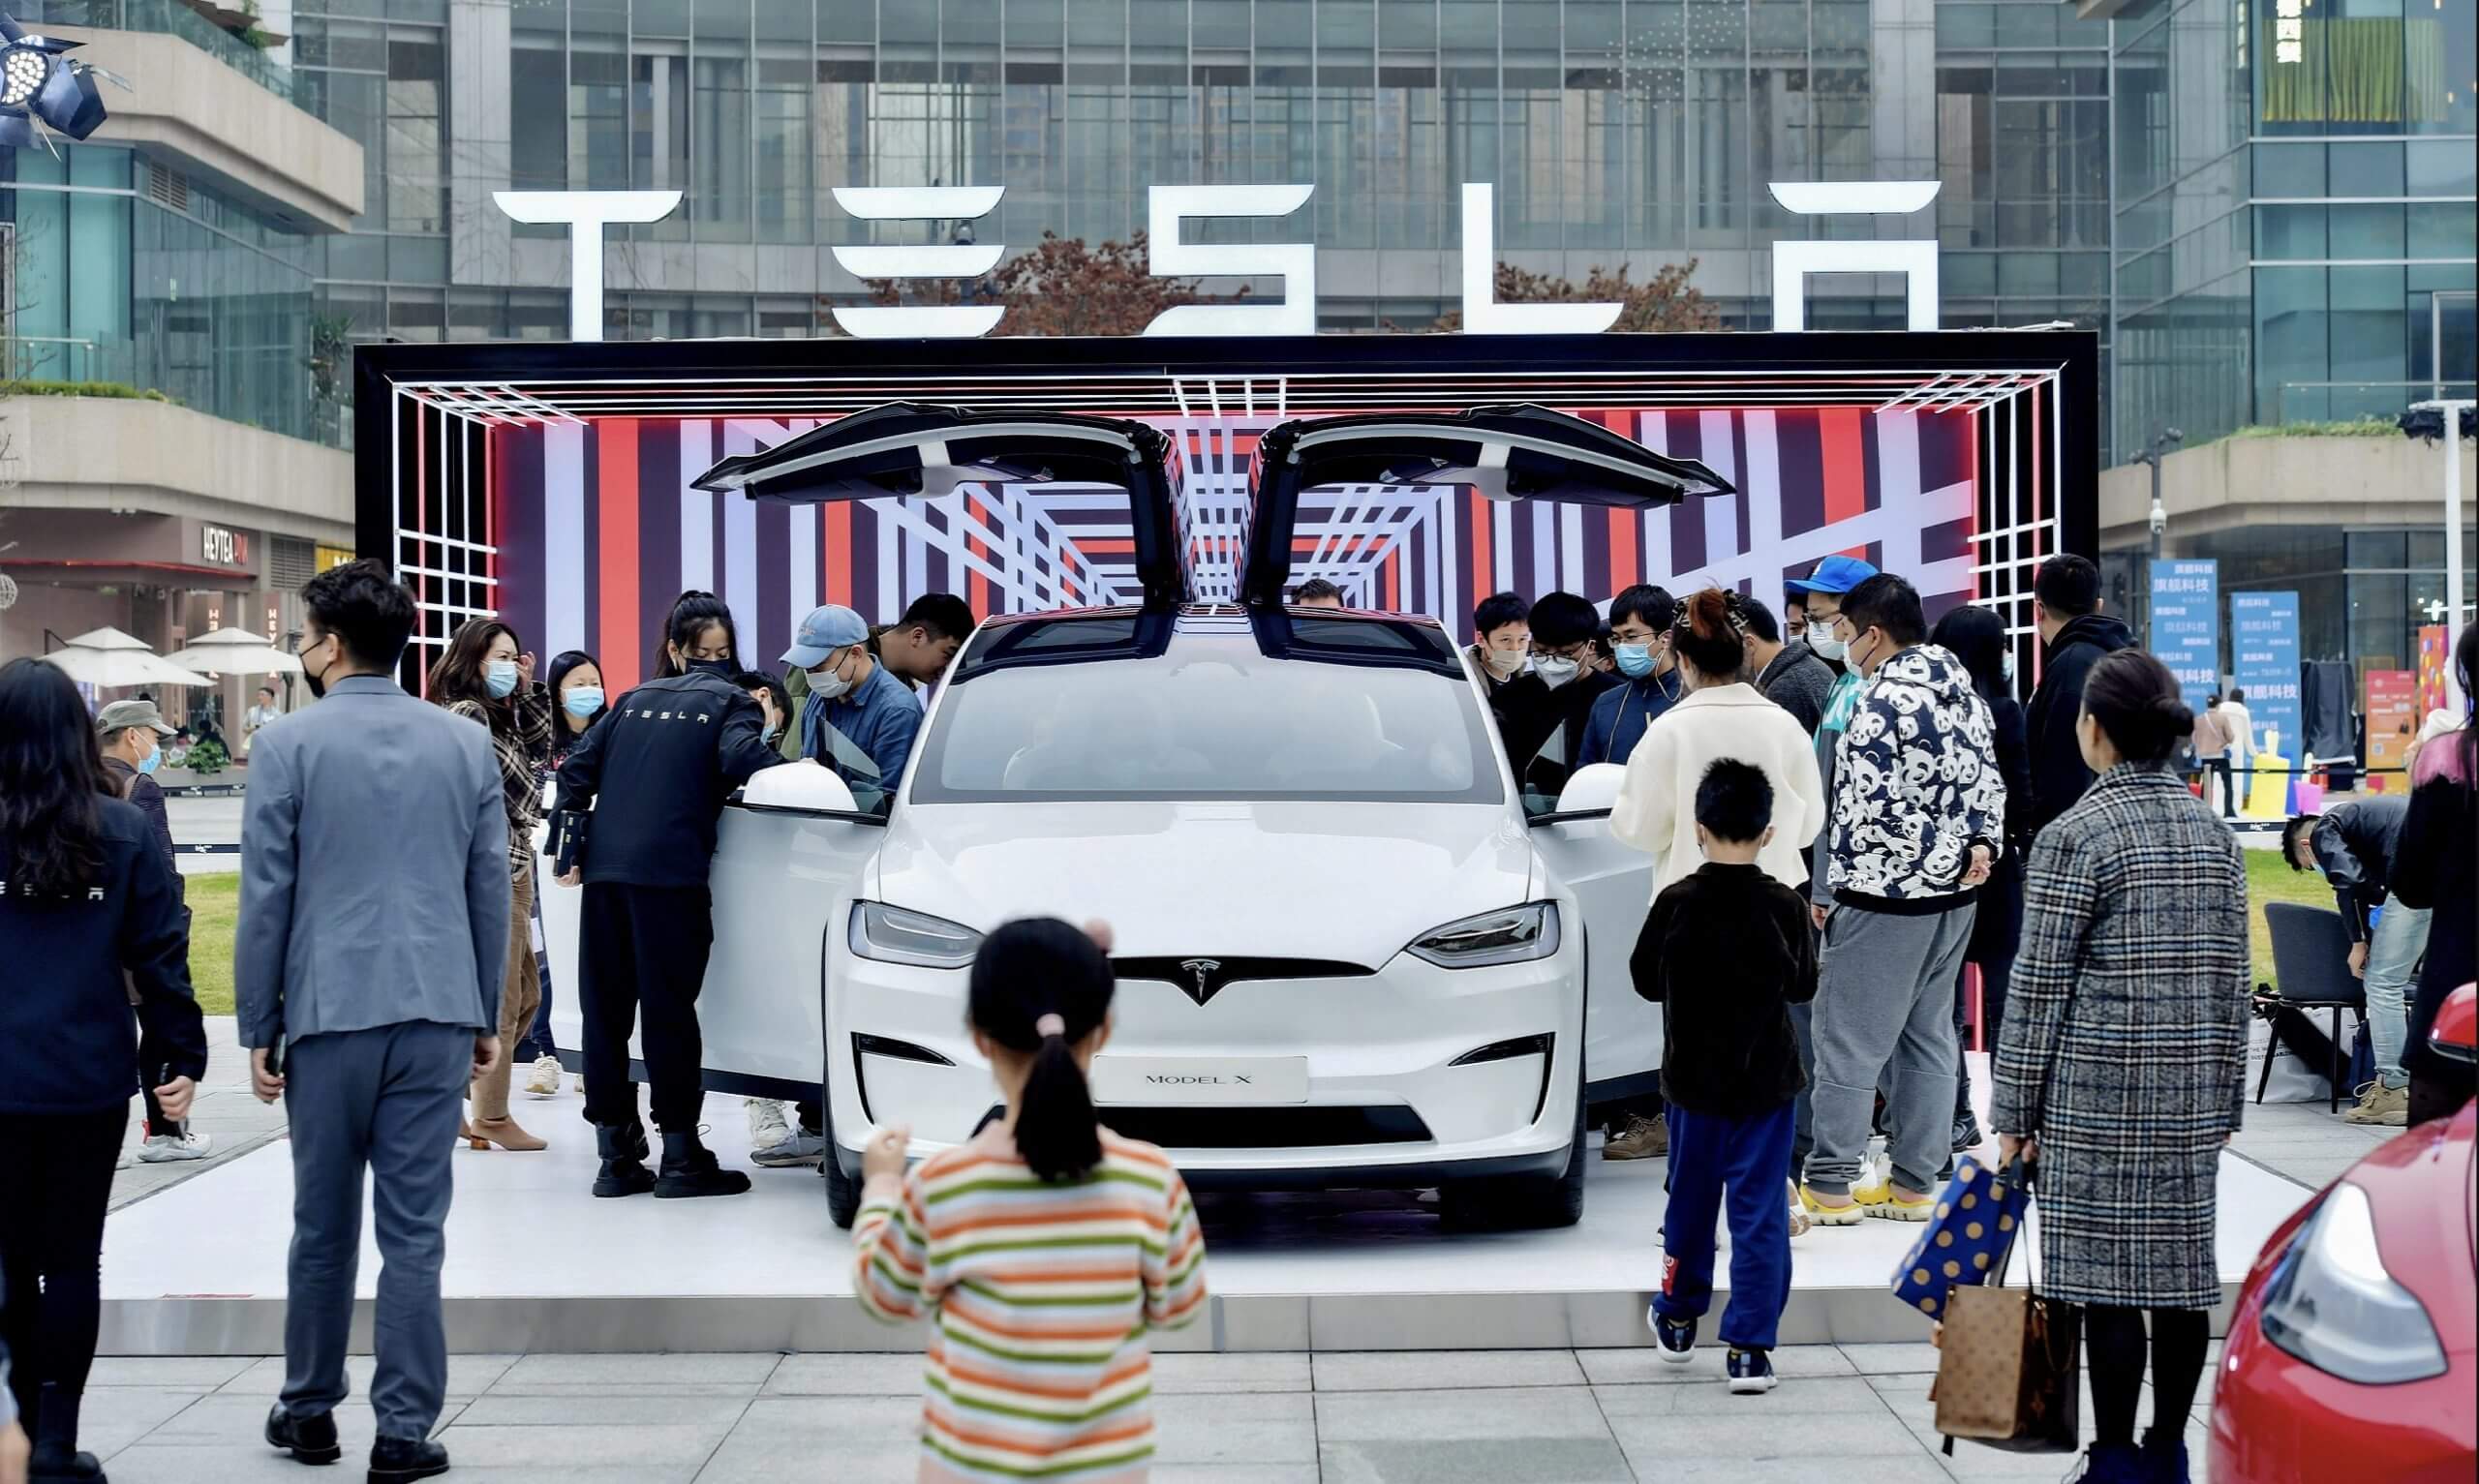 Tesla aura besoin de nouvelles baisses de prix pour déclencher la demande chinoise : Morgan Stanley